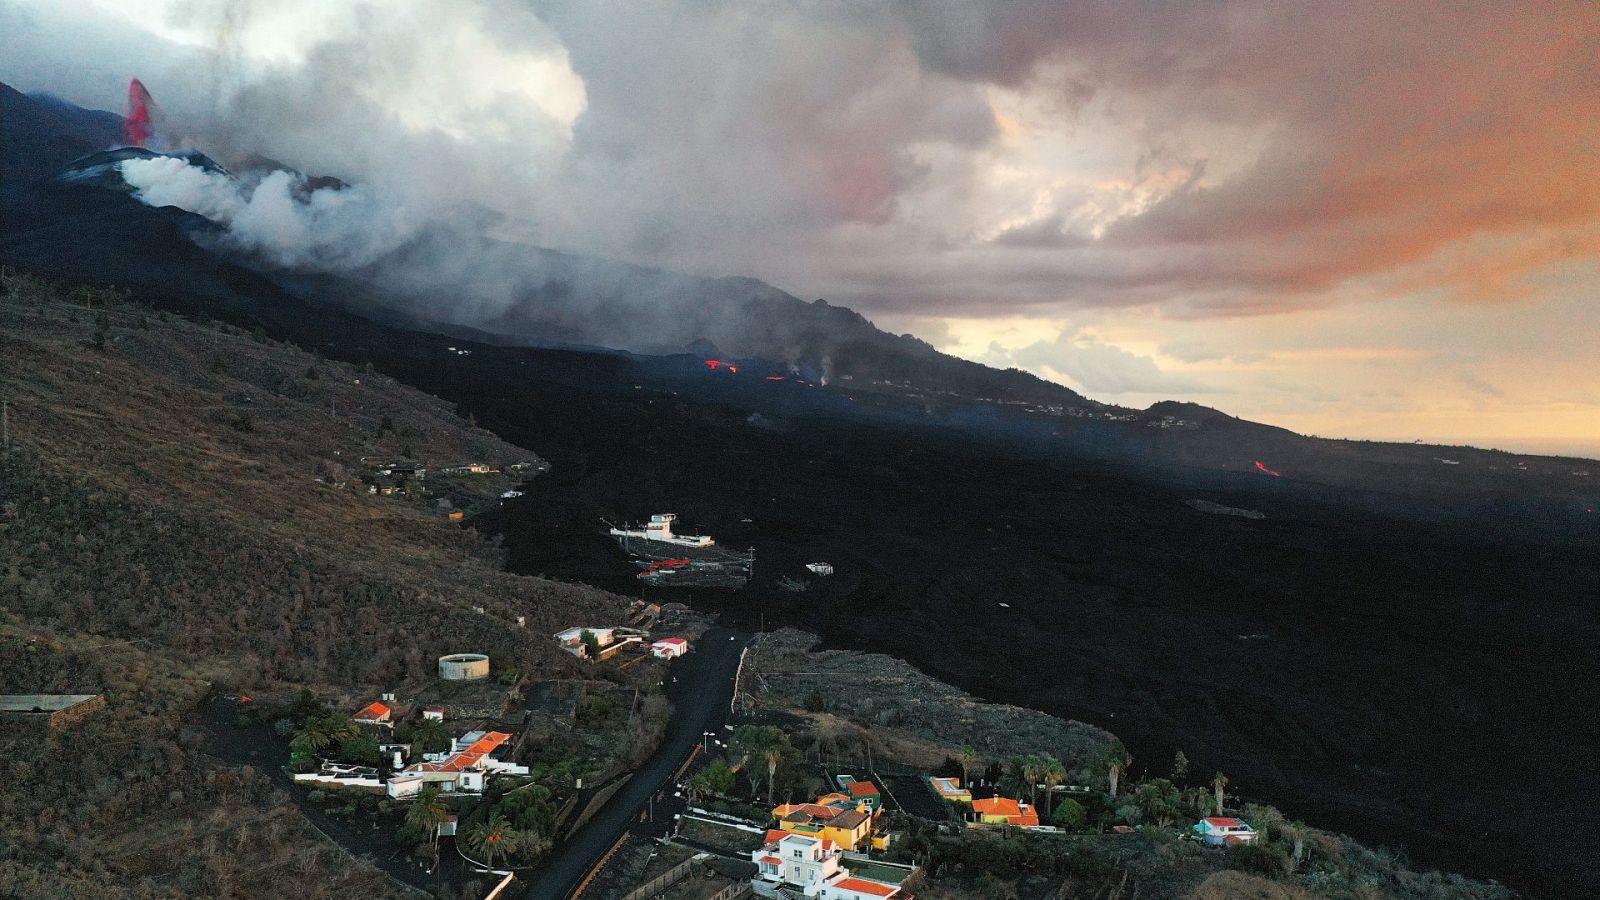 Fotografía realizada con un dron que muestra la erupción del volcán Cumbre Vieja que expulsa material sólido